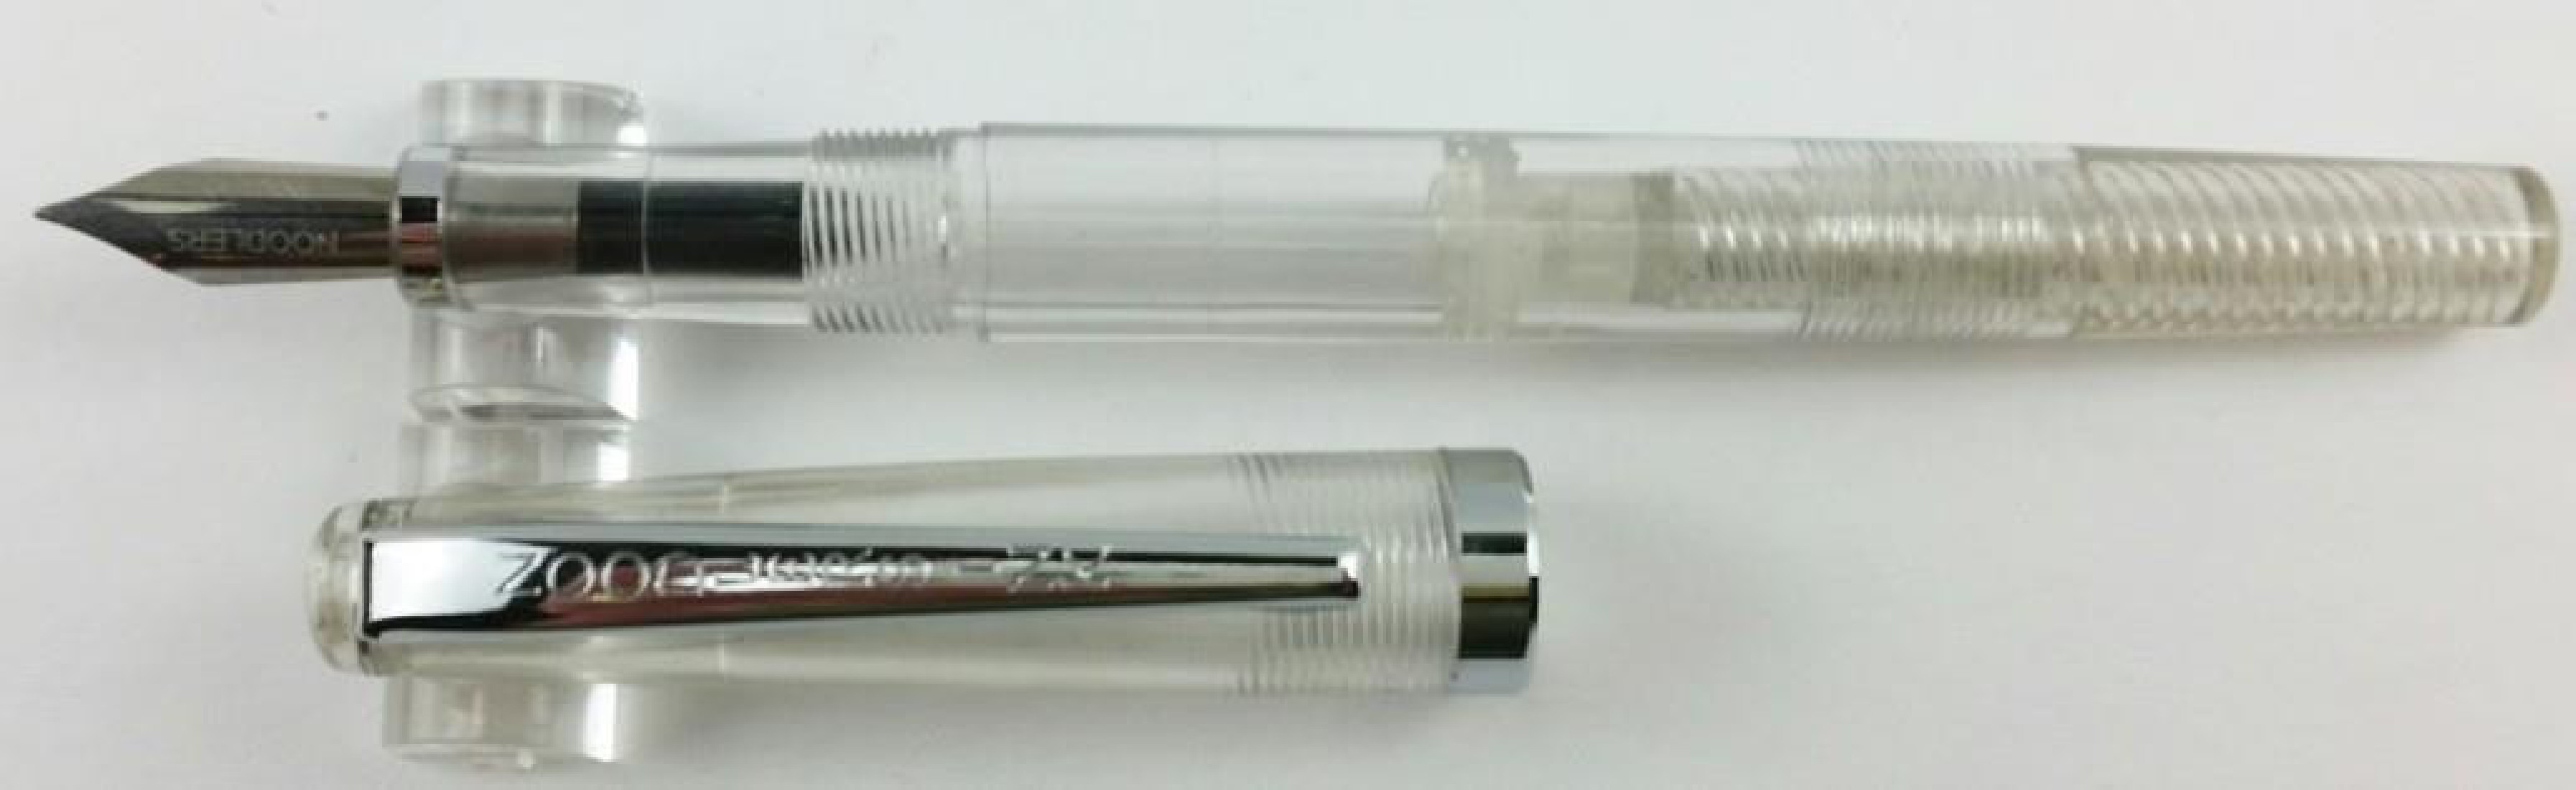 Noodlers Creaper Clear Demonstrator Standard Flex 17000  Fountain Pen